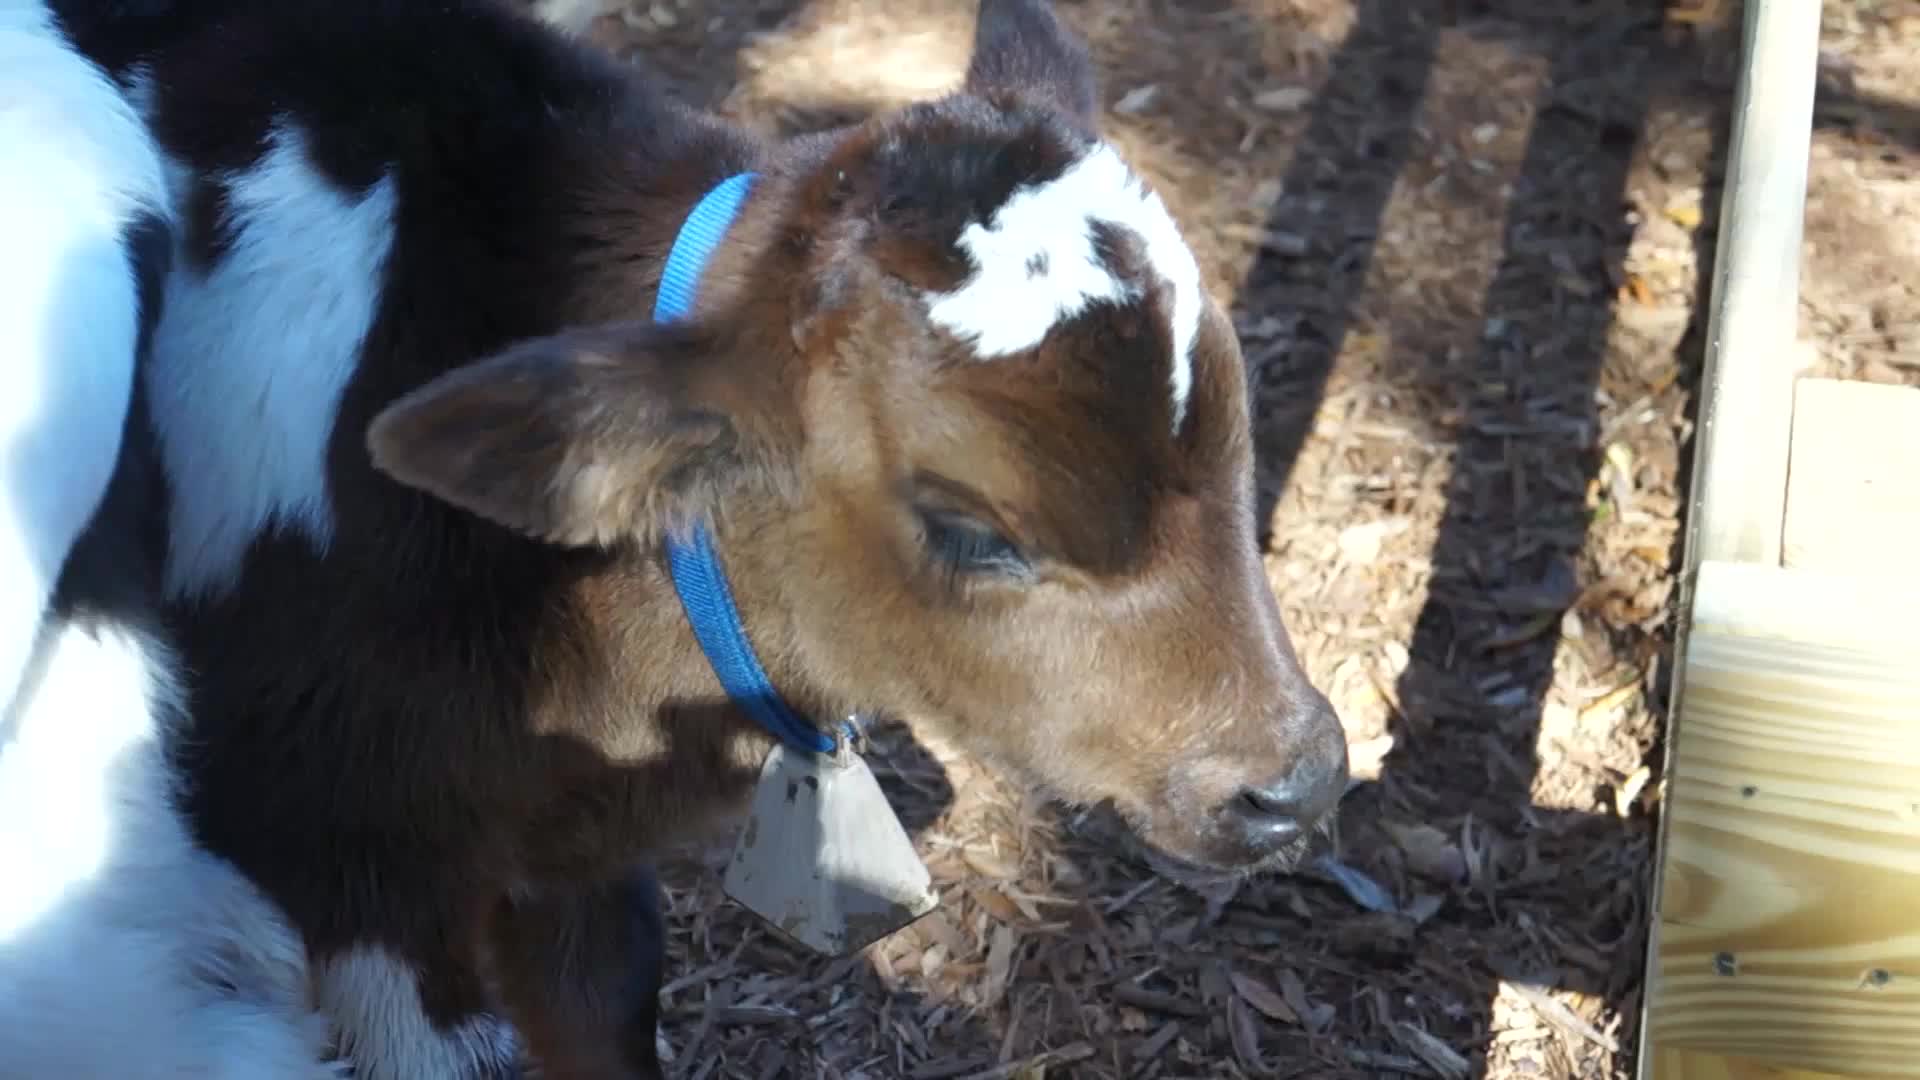 Calf Baby Cow - Animals - 4fun.com